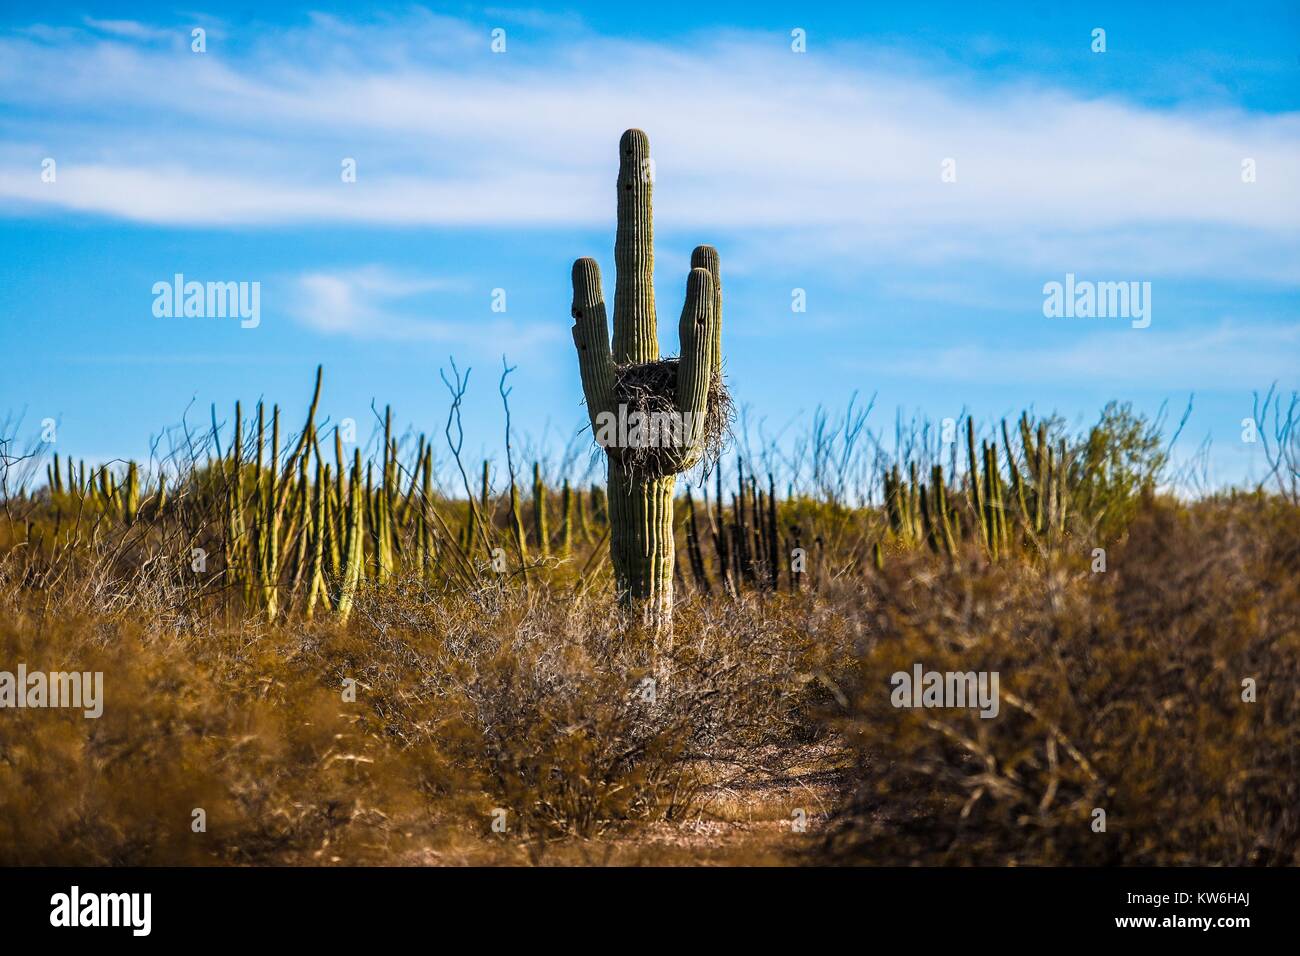 Bosque de Sahuaros matorral espinoso, pitaya, Pitahaya y demas especies de plantas de Cactus característicos de los valles , planicies, cerros y sierr Stock Photo